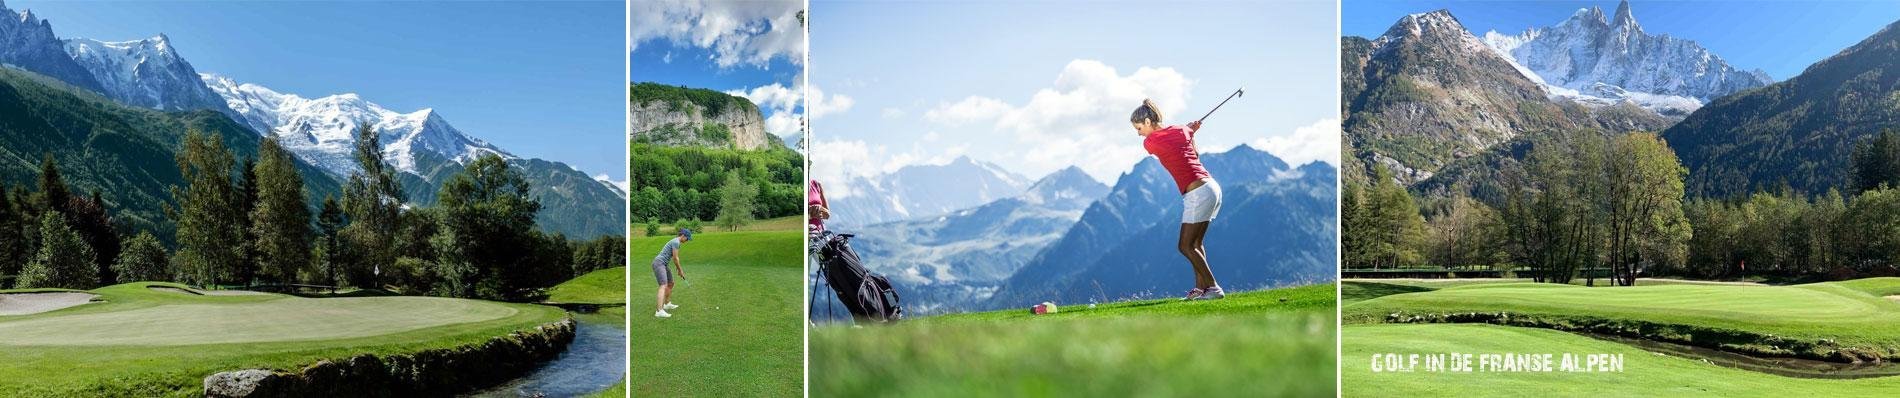 frankrjk franse alpen golf golfvakantie